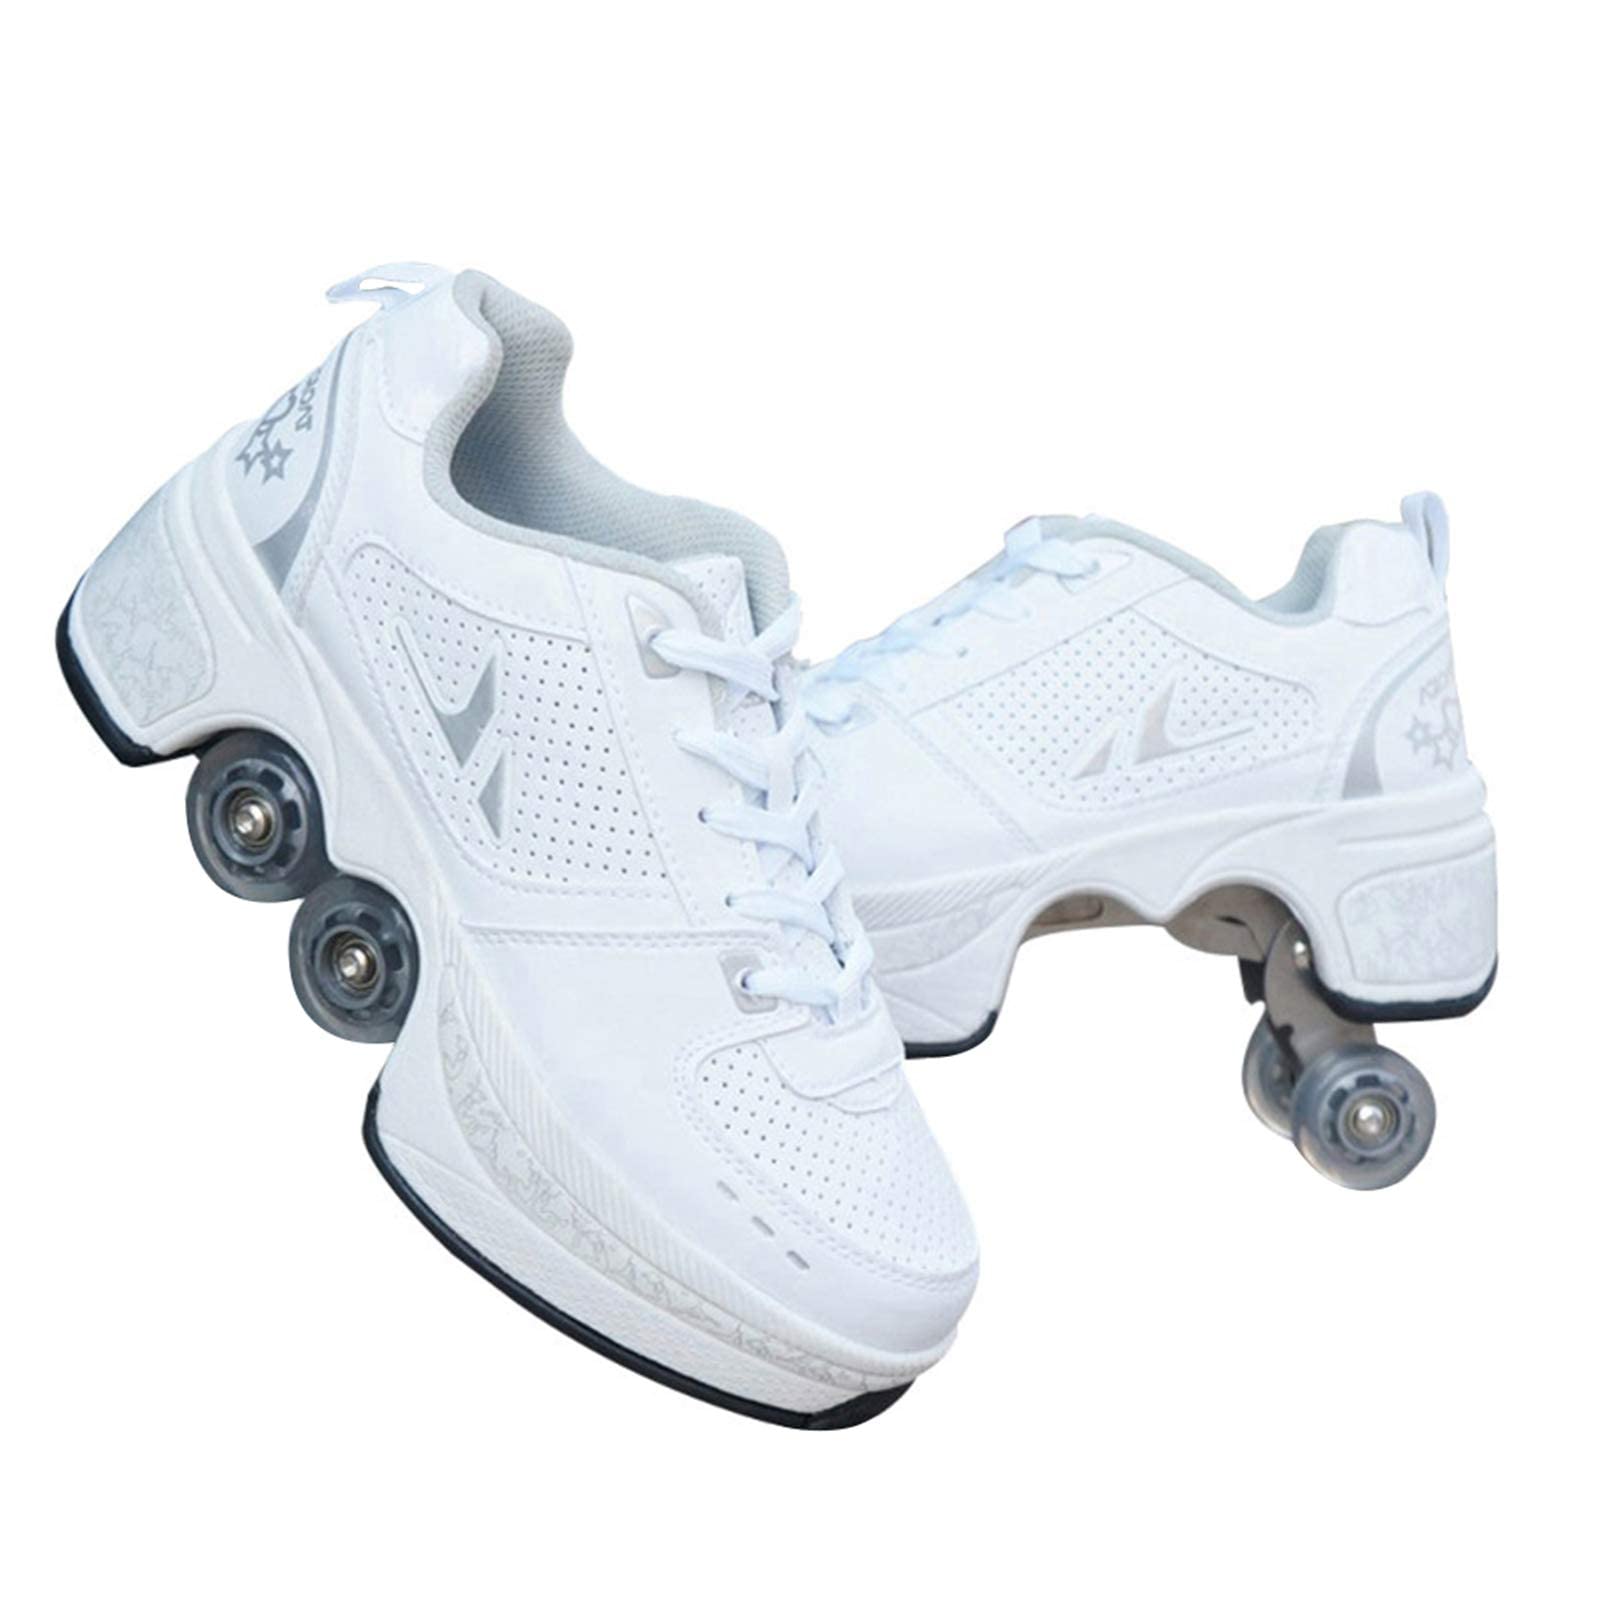 JTKDL Rollschuh Roller Skates Lauflernschuhe, Sneakers, 2in1 Mehrzweckschuhe Schuhe Mit Rollen Skateboardschuhe,Inline-Skate,Verstellbare Quad-Rollschuh Stiefel,Silver-32